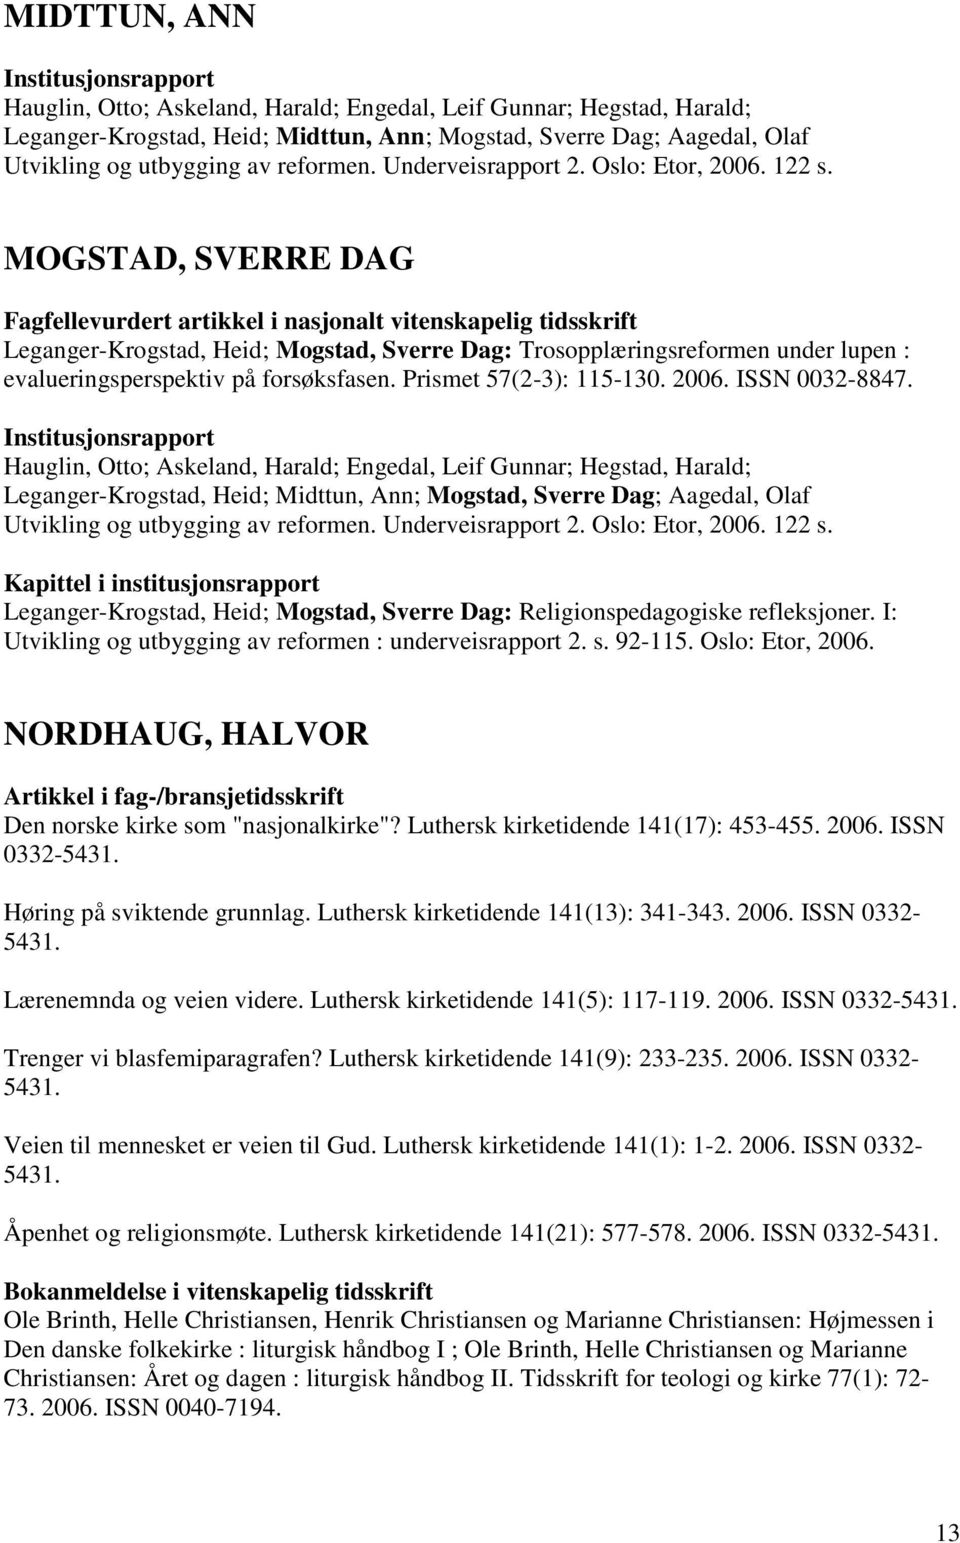 MOGSTAD, SVERRE DAG Leganger-Krogstad, Heid; Mogstad, Sverre Dag: Trosopplæringsreformen under lupen : evalueringsperspektiv på forsøksfasen. Prismet 57(2-3): 115-130. 2006. ISSN 0032-8847.